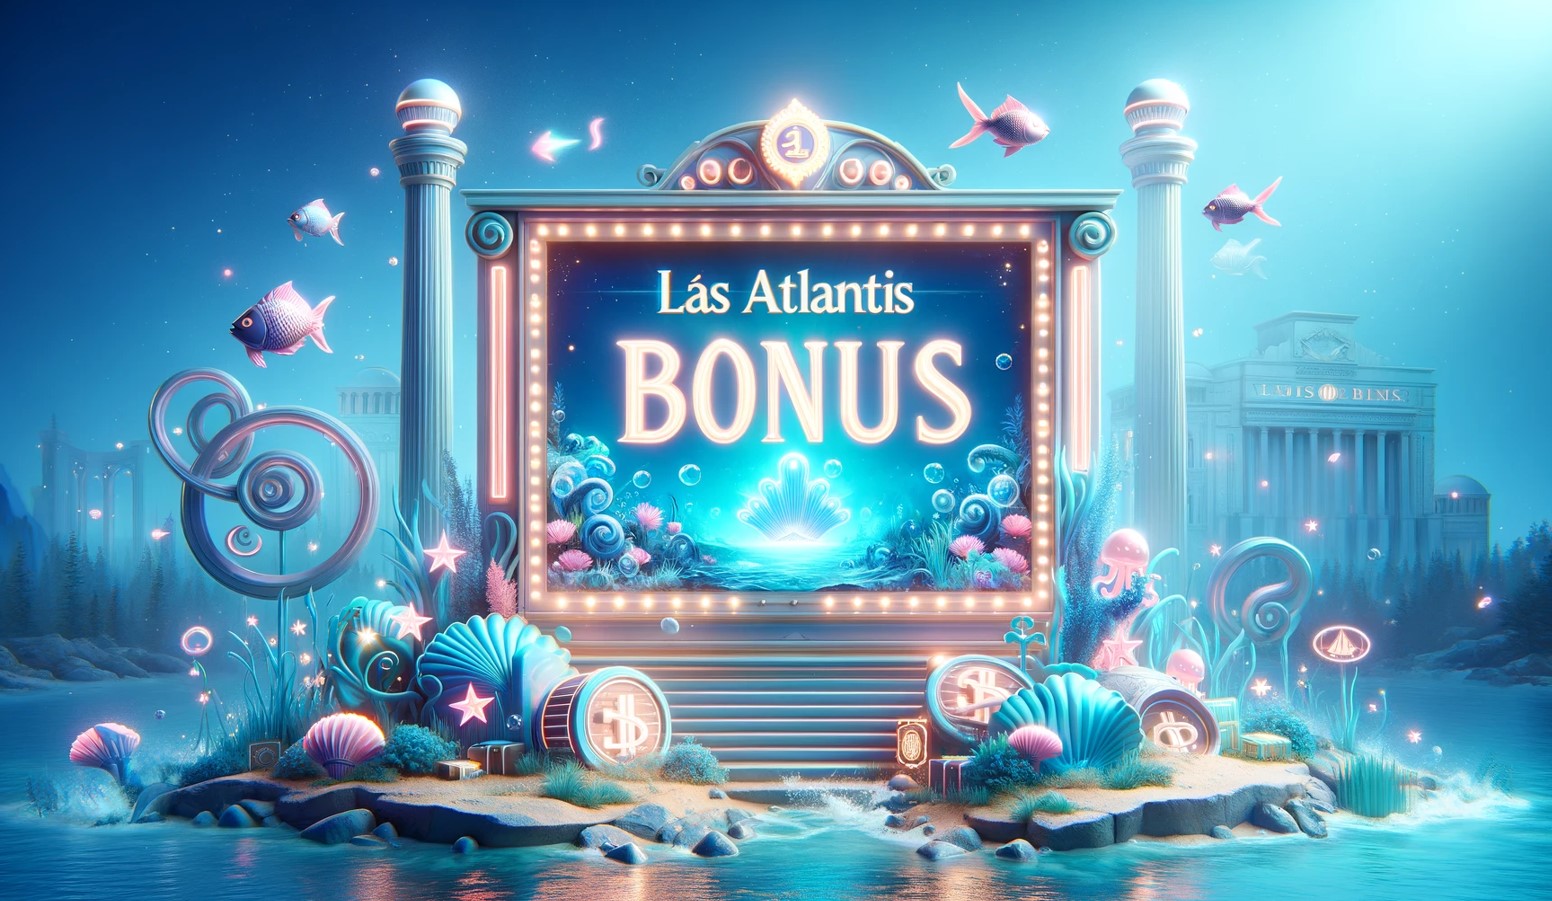 Las Atlantis casino bonus 1